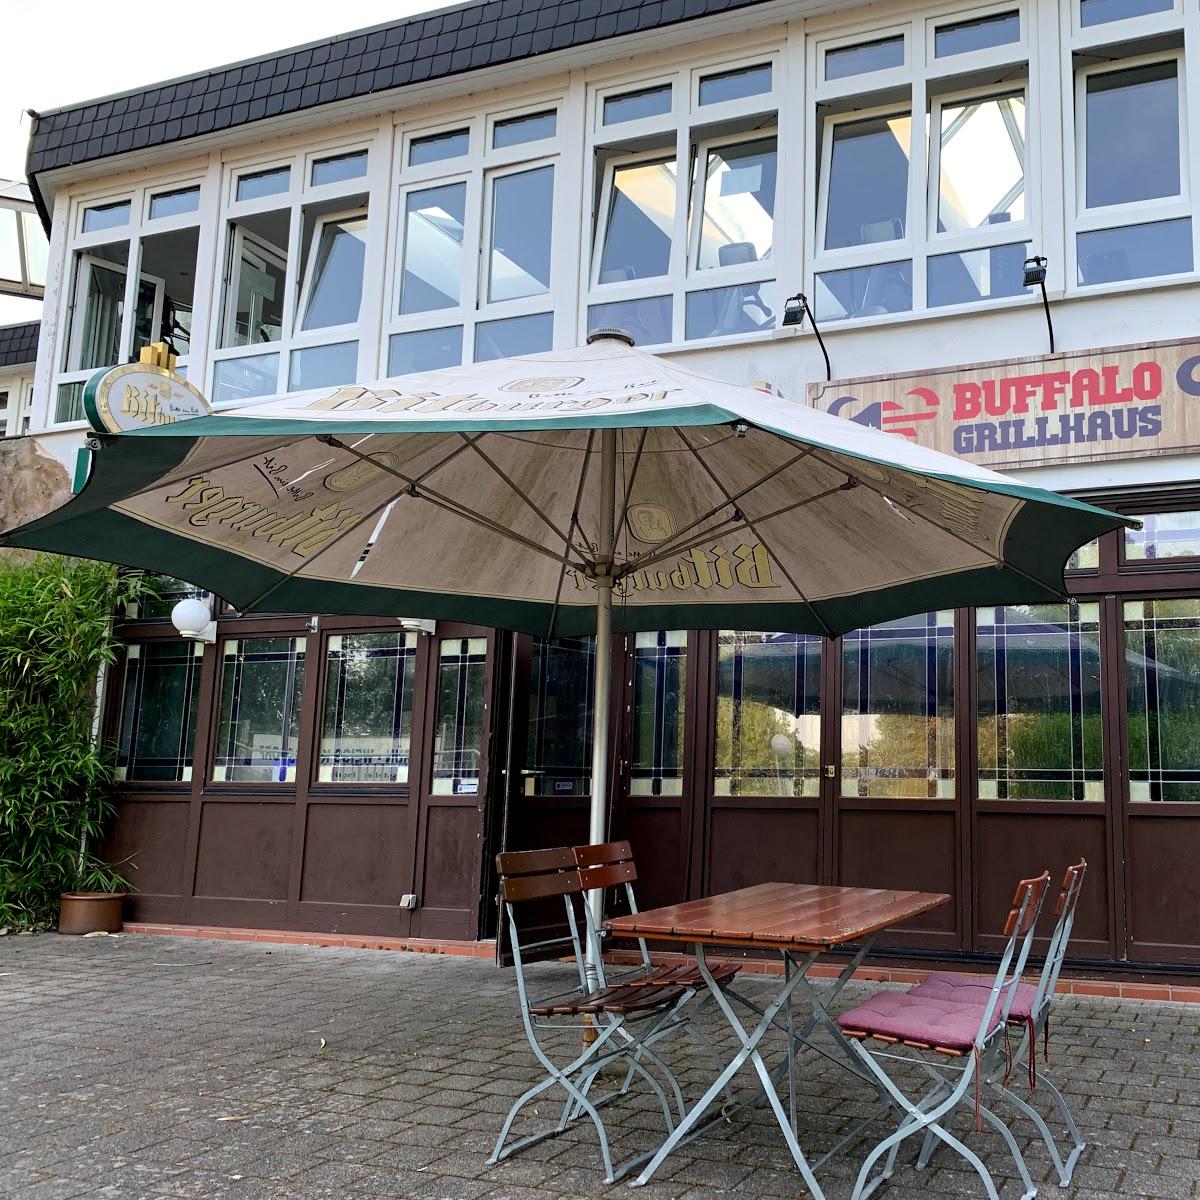 Restaurant "Buffalo Grillhaus" in Frechen